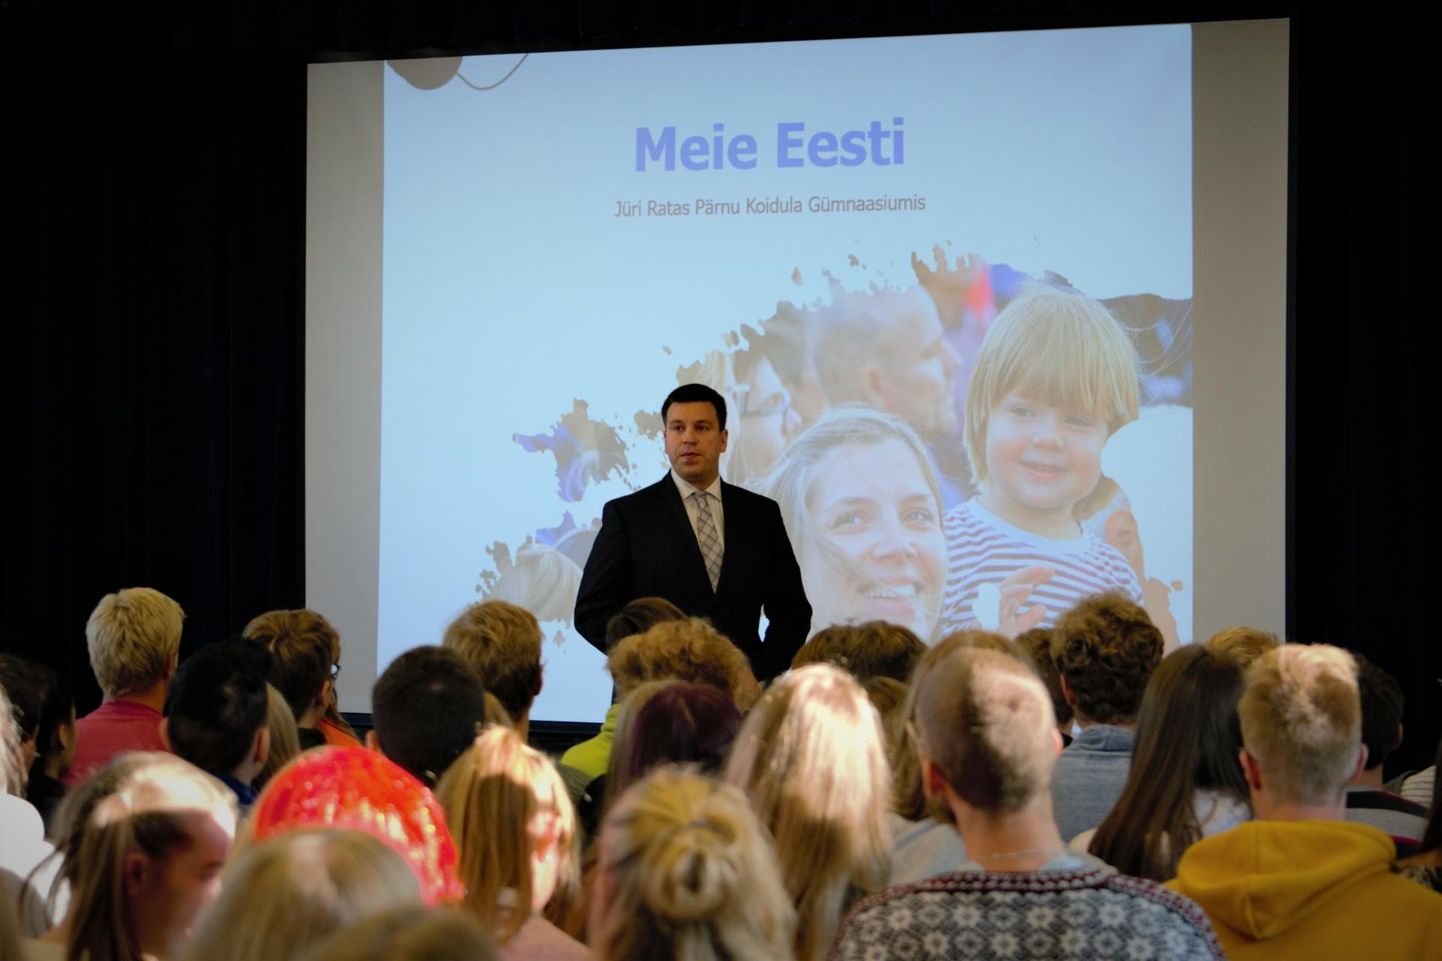 Peaminister pidas Koidula kooliperele loengu teemal “Meie Eesti”.